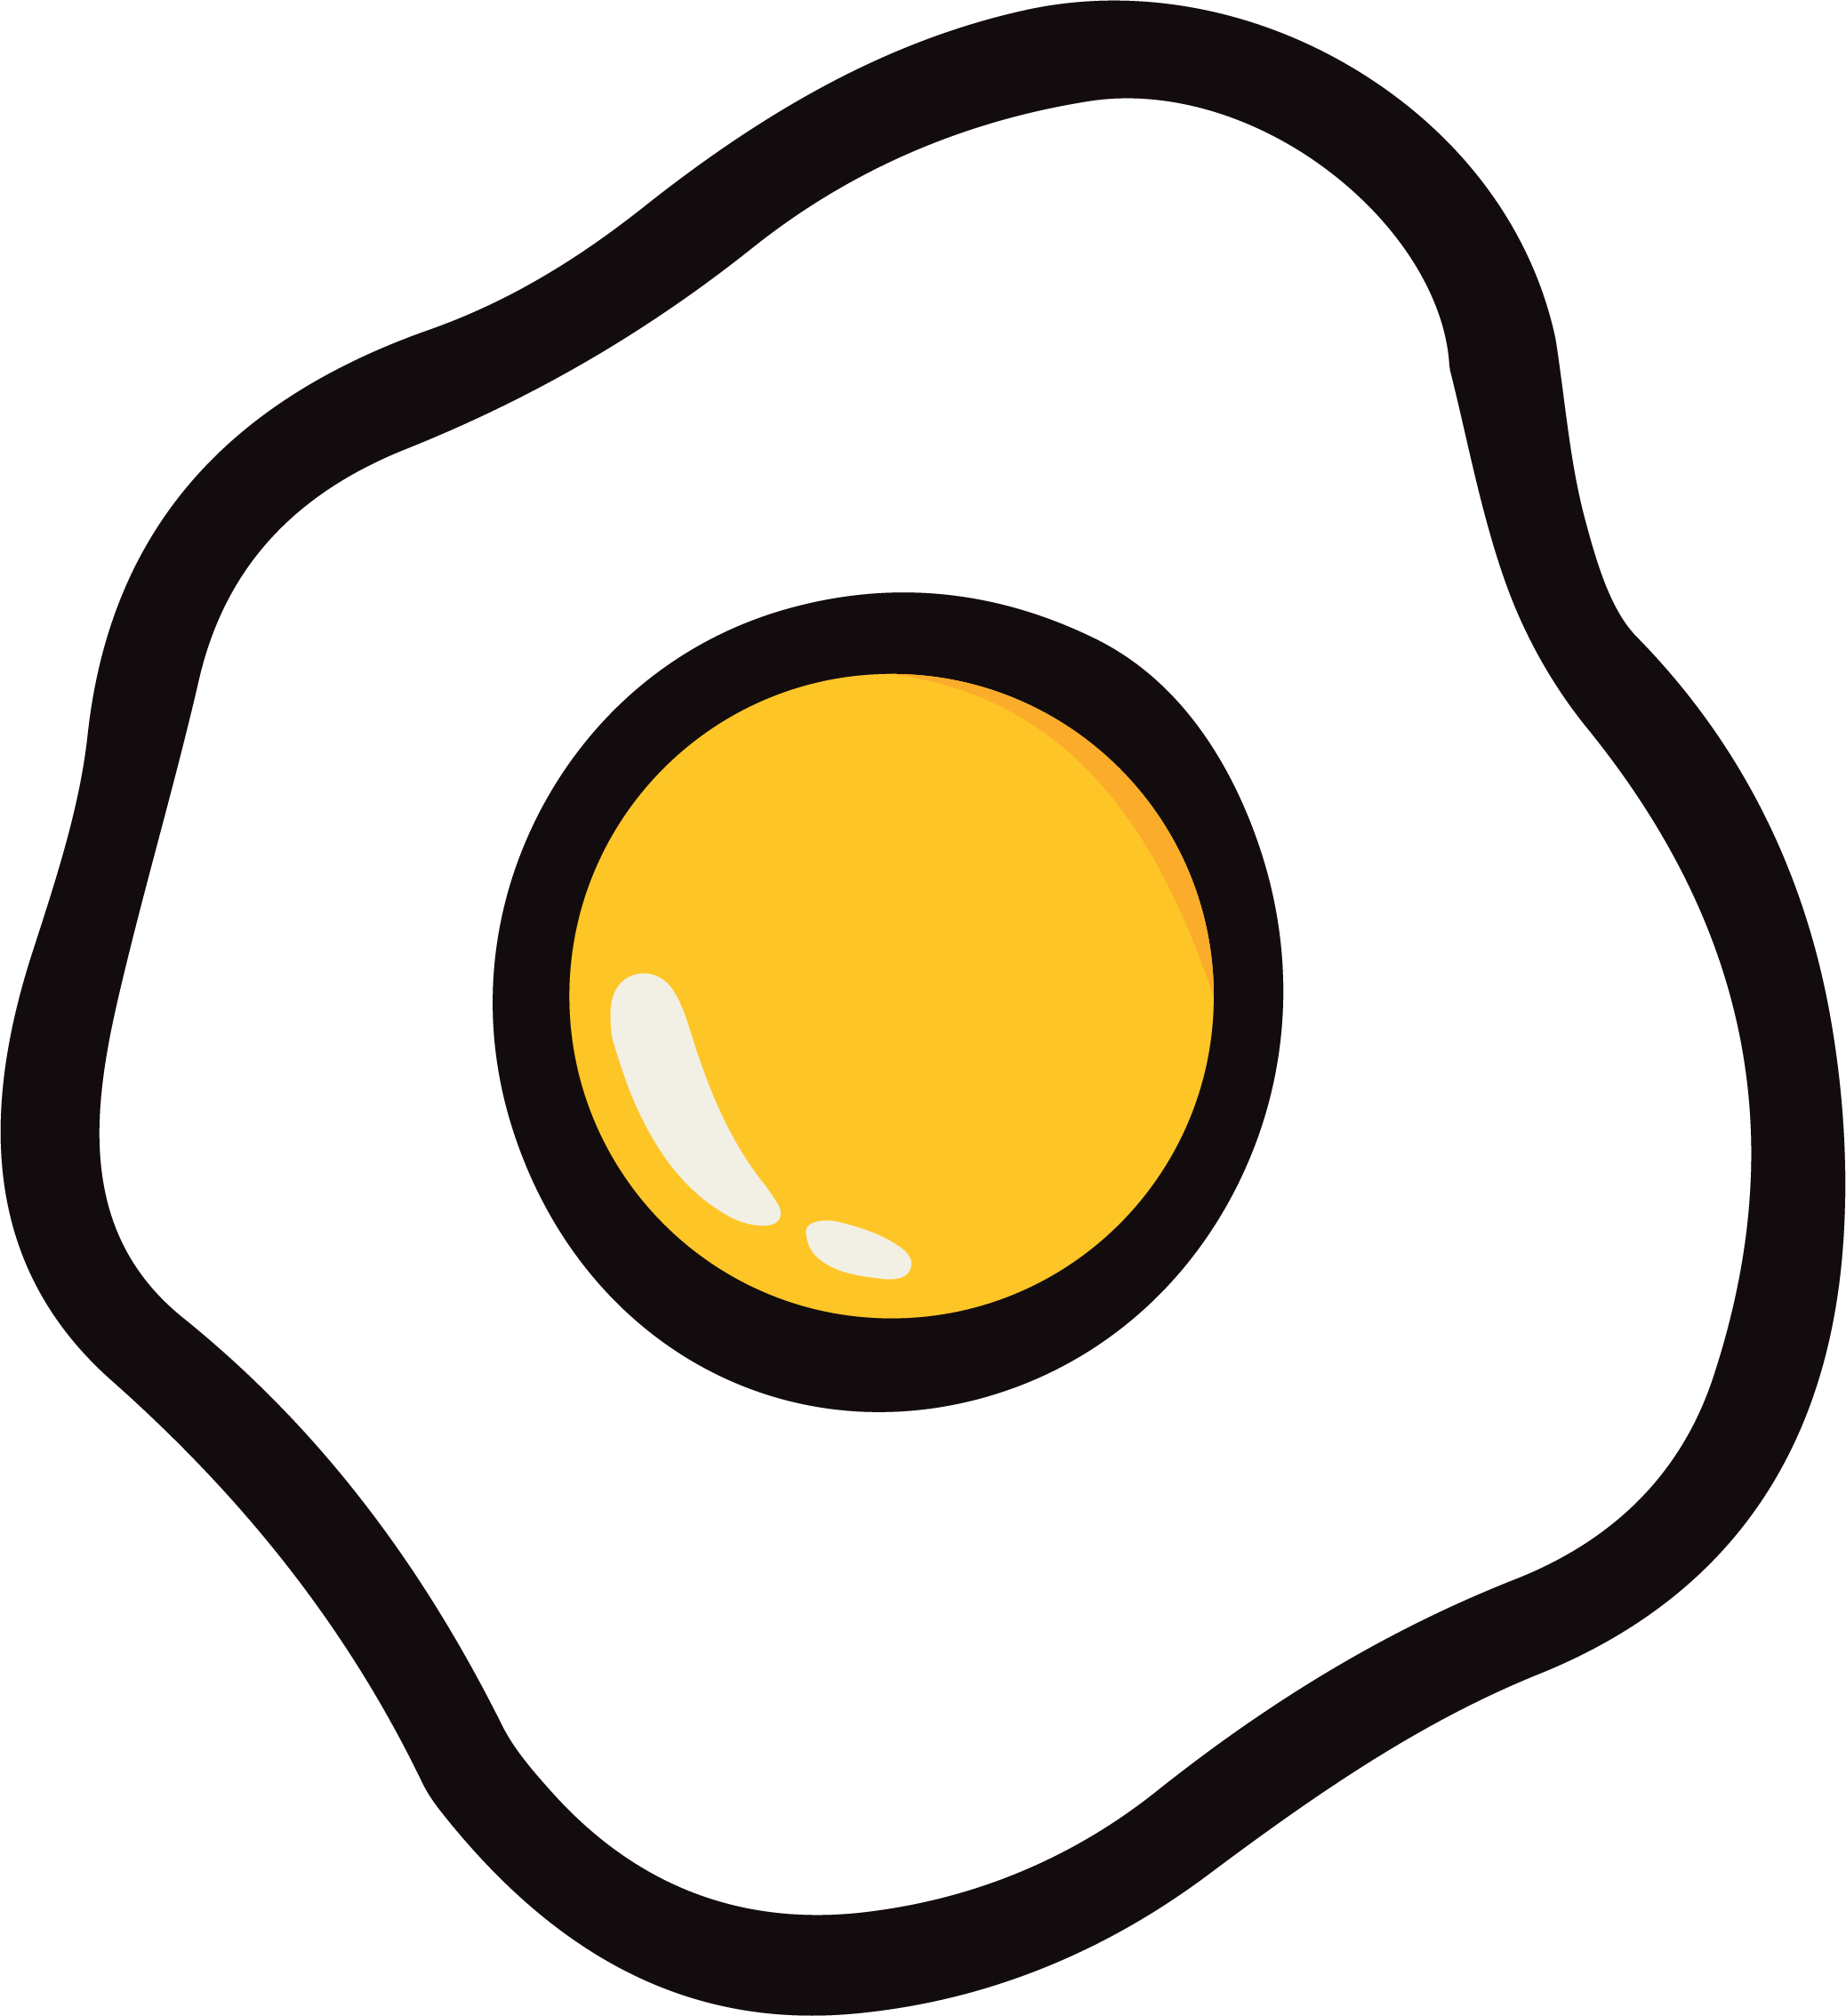 Fried Egg Clip Art - Fried Egg Image